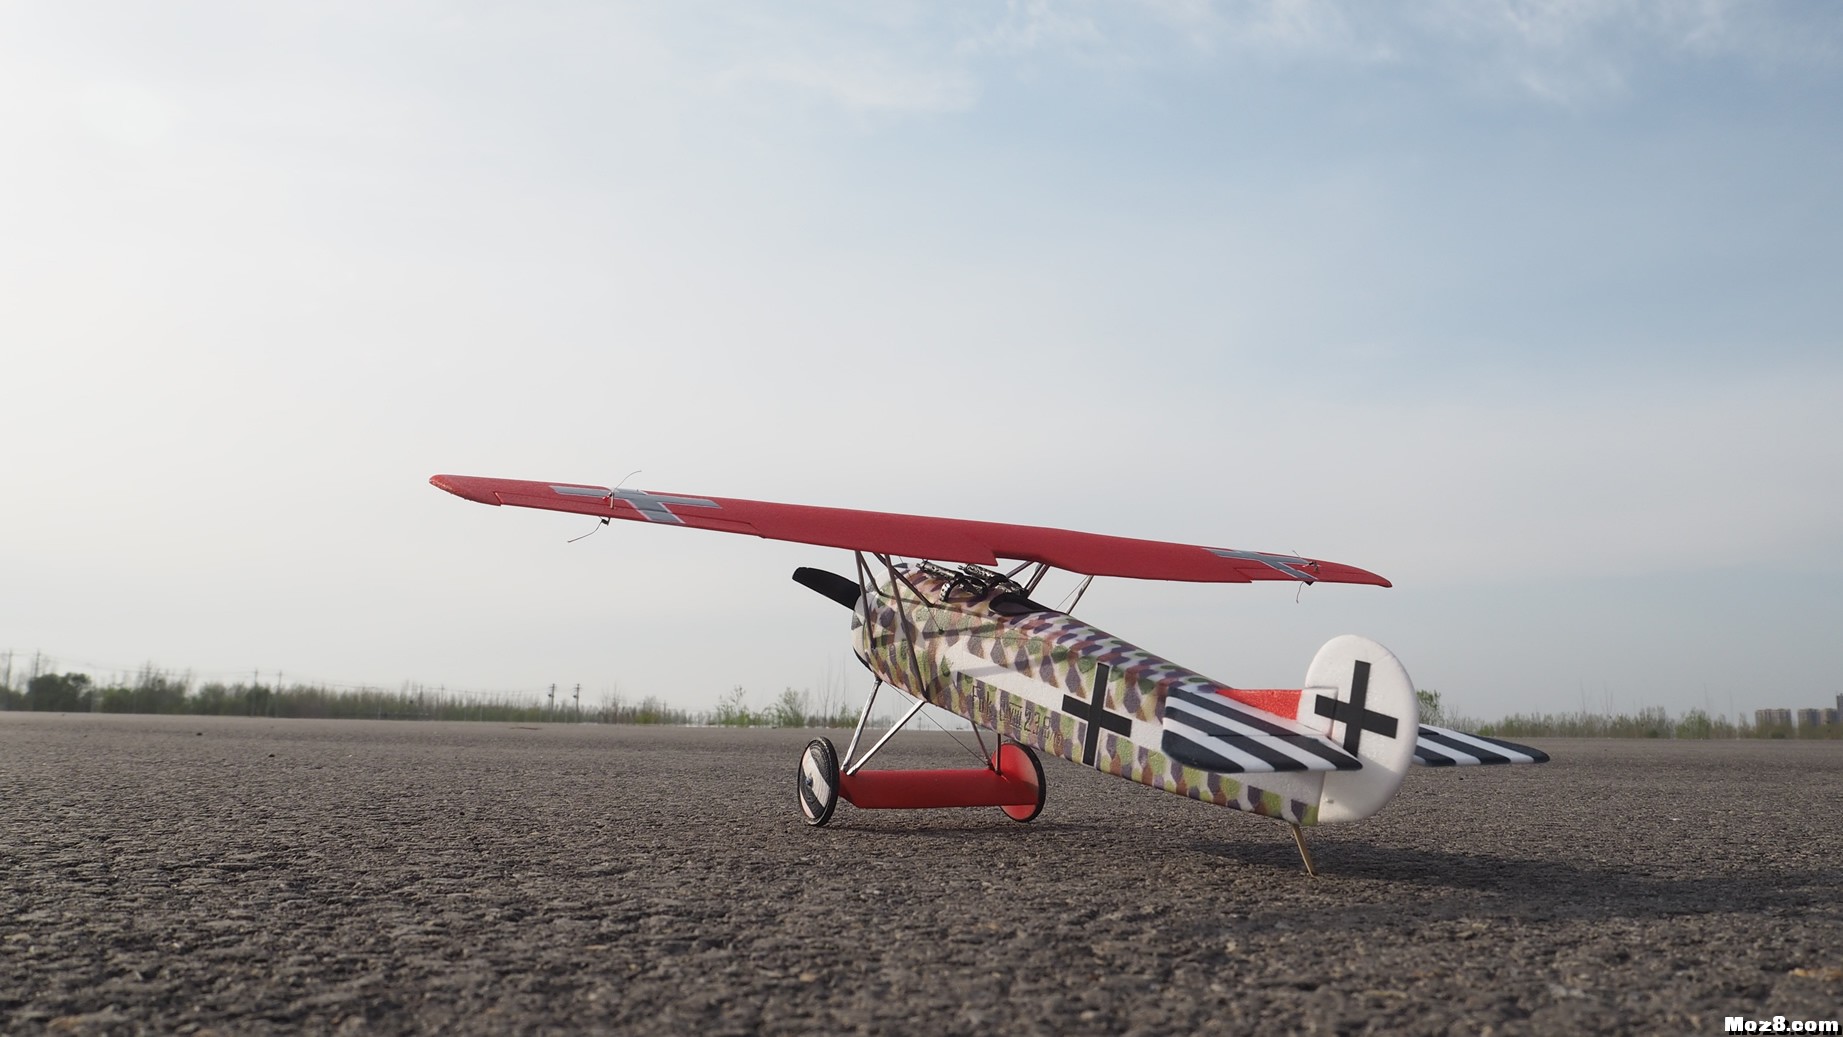 【爱因制造】迷你Fokker D-VIII战机 舵机,接收机,空心杯,bilibili,视频 作者:xbnlkdbxl 3637 